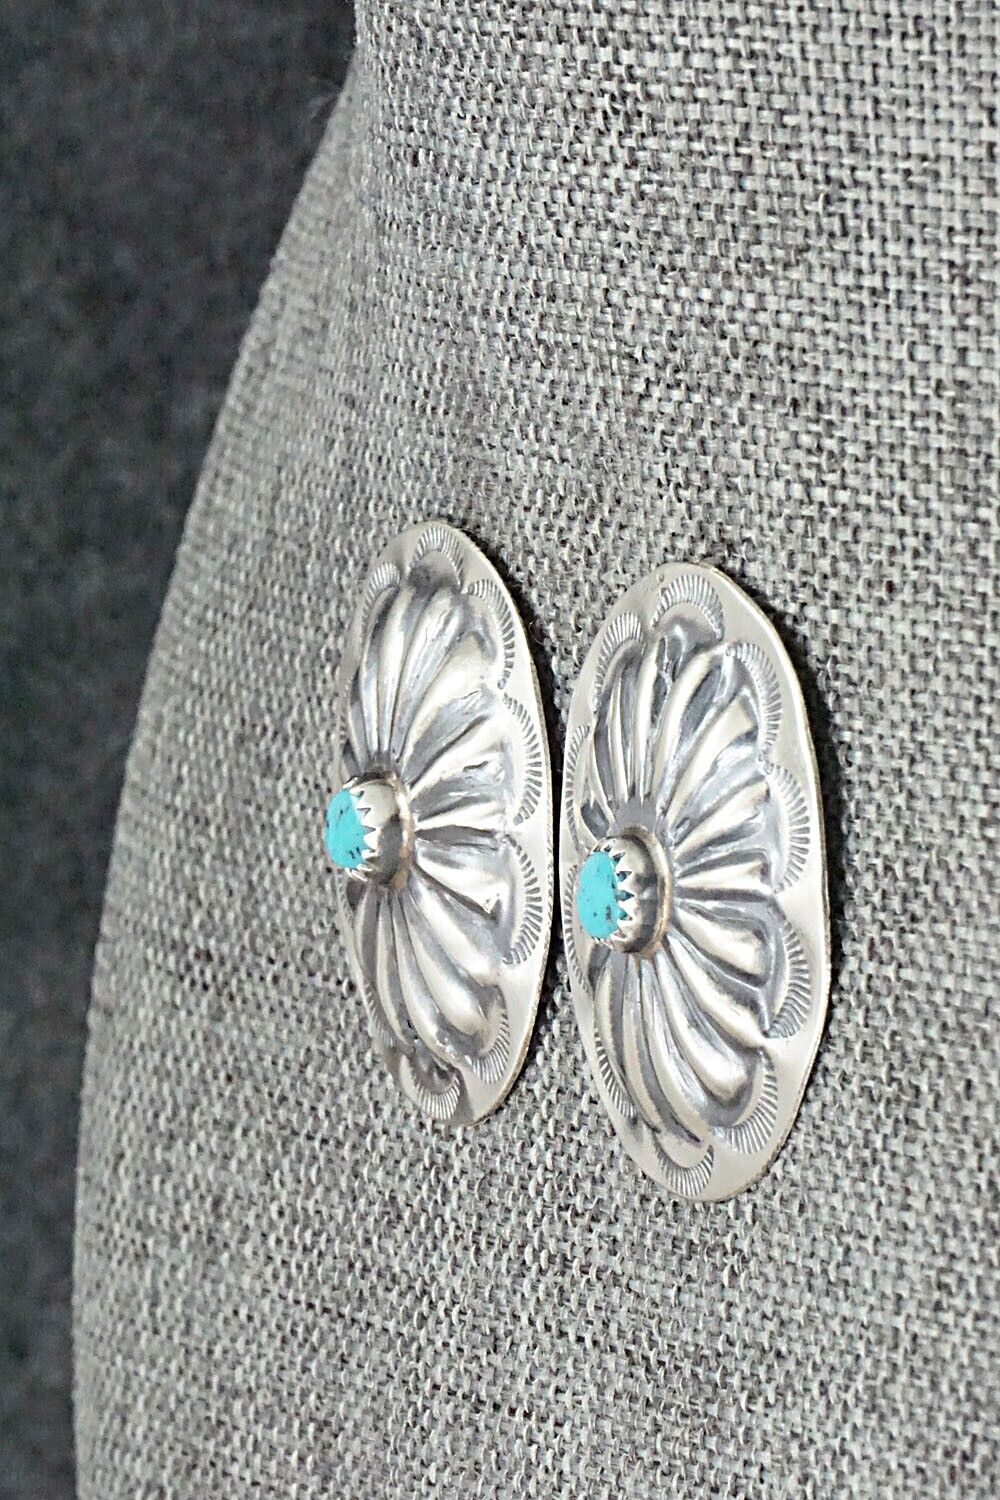 Turquoise & Sterling Silver Earrings - Joan Begay